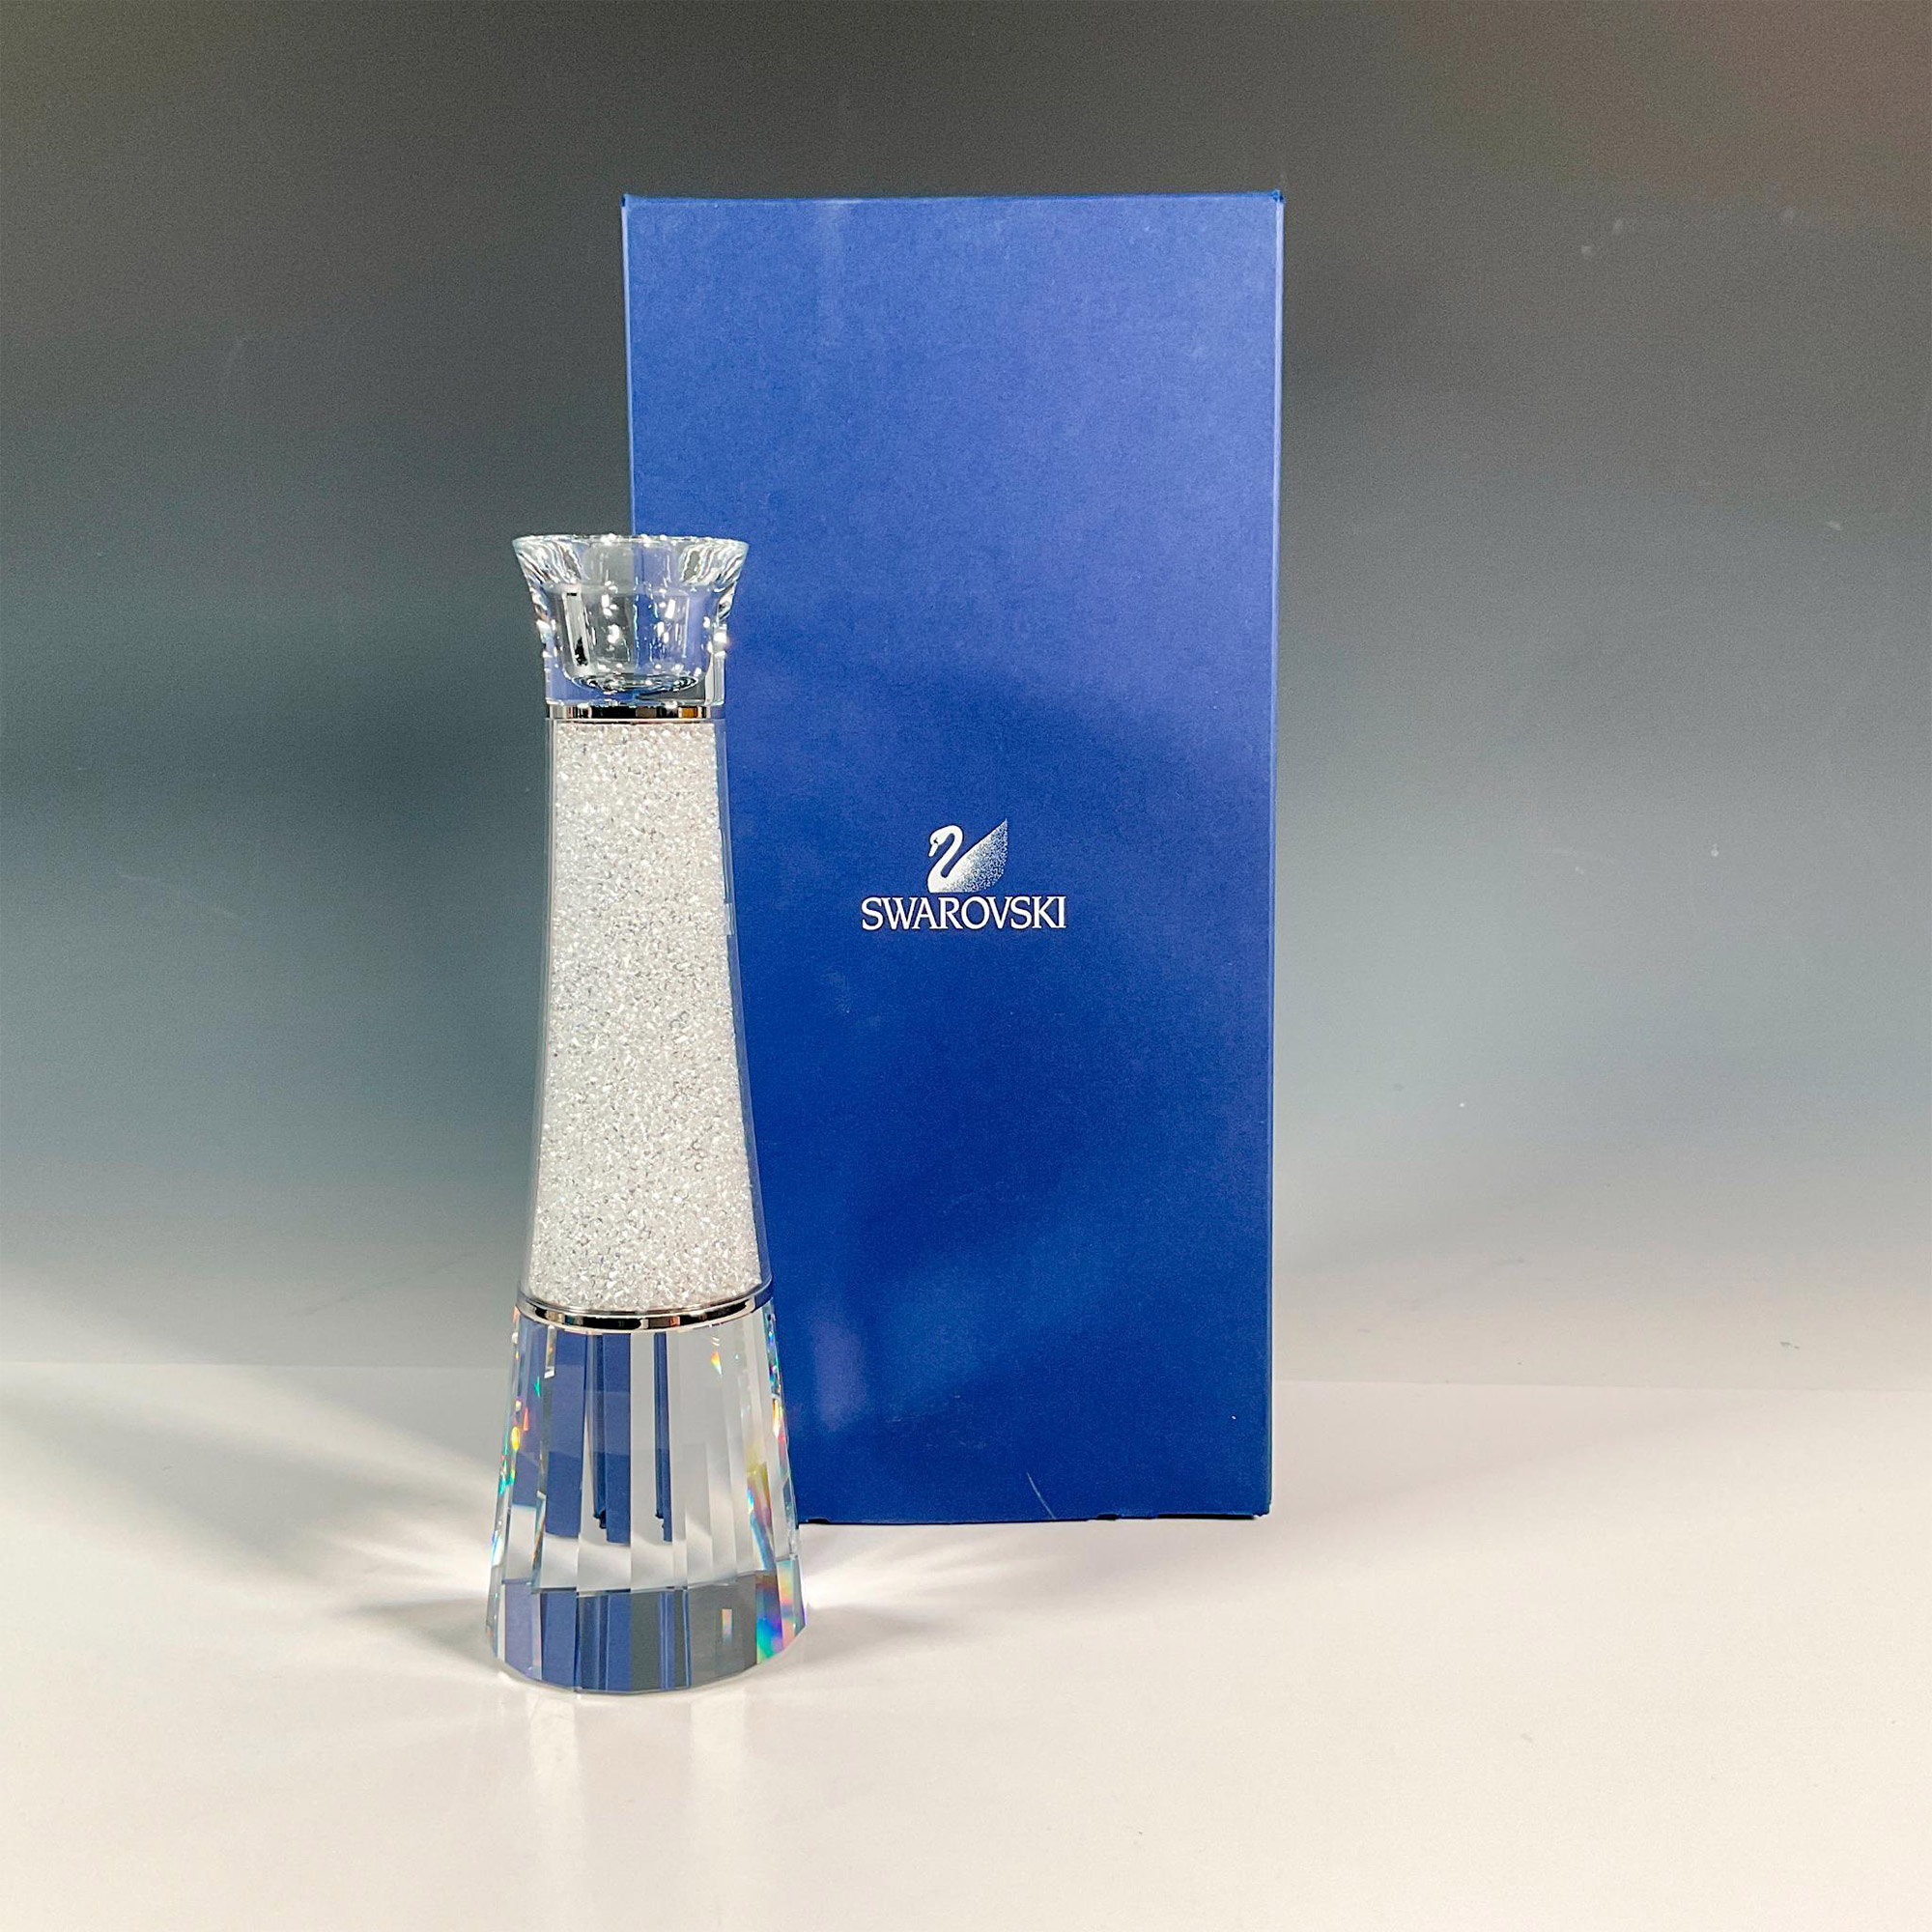 Swarovski Crystal Candle Holder, Crystalline - Image 4 of 4